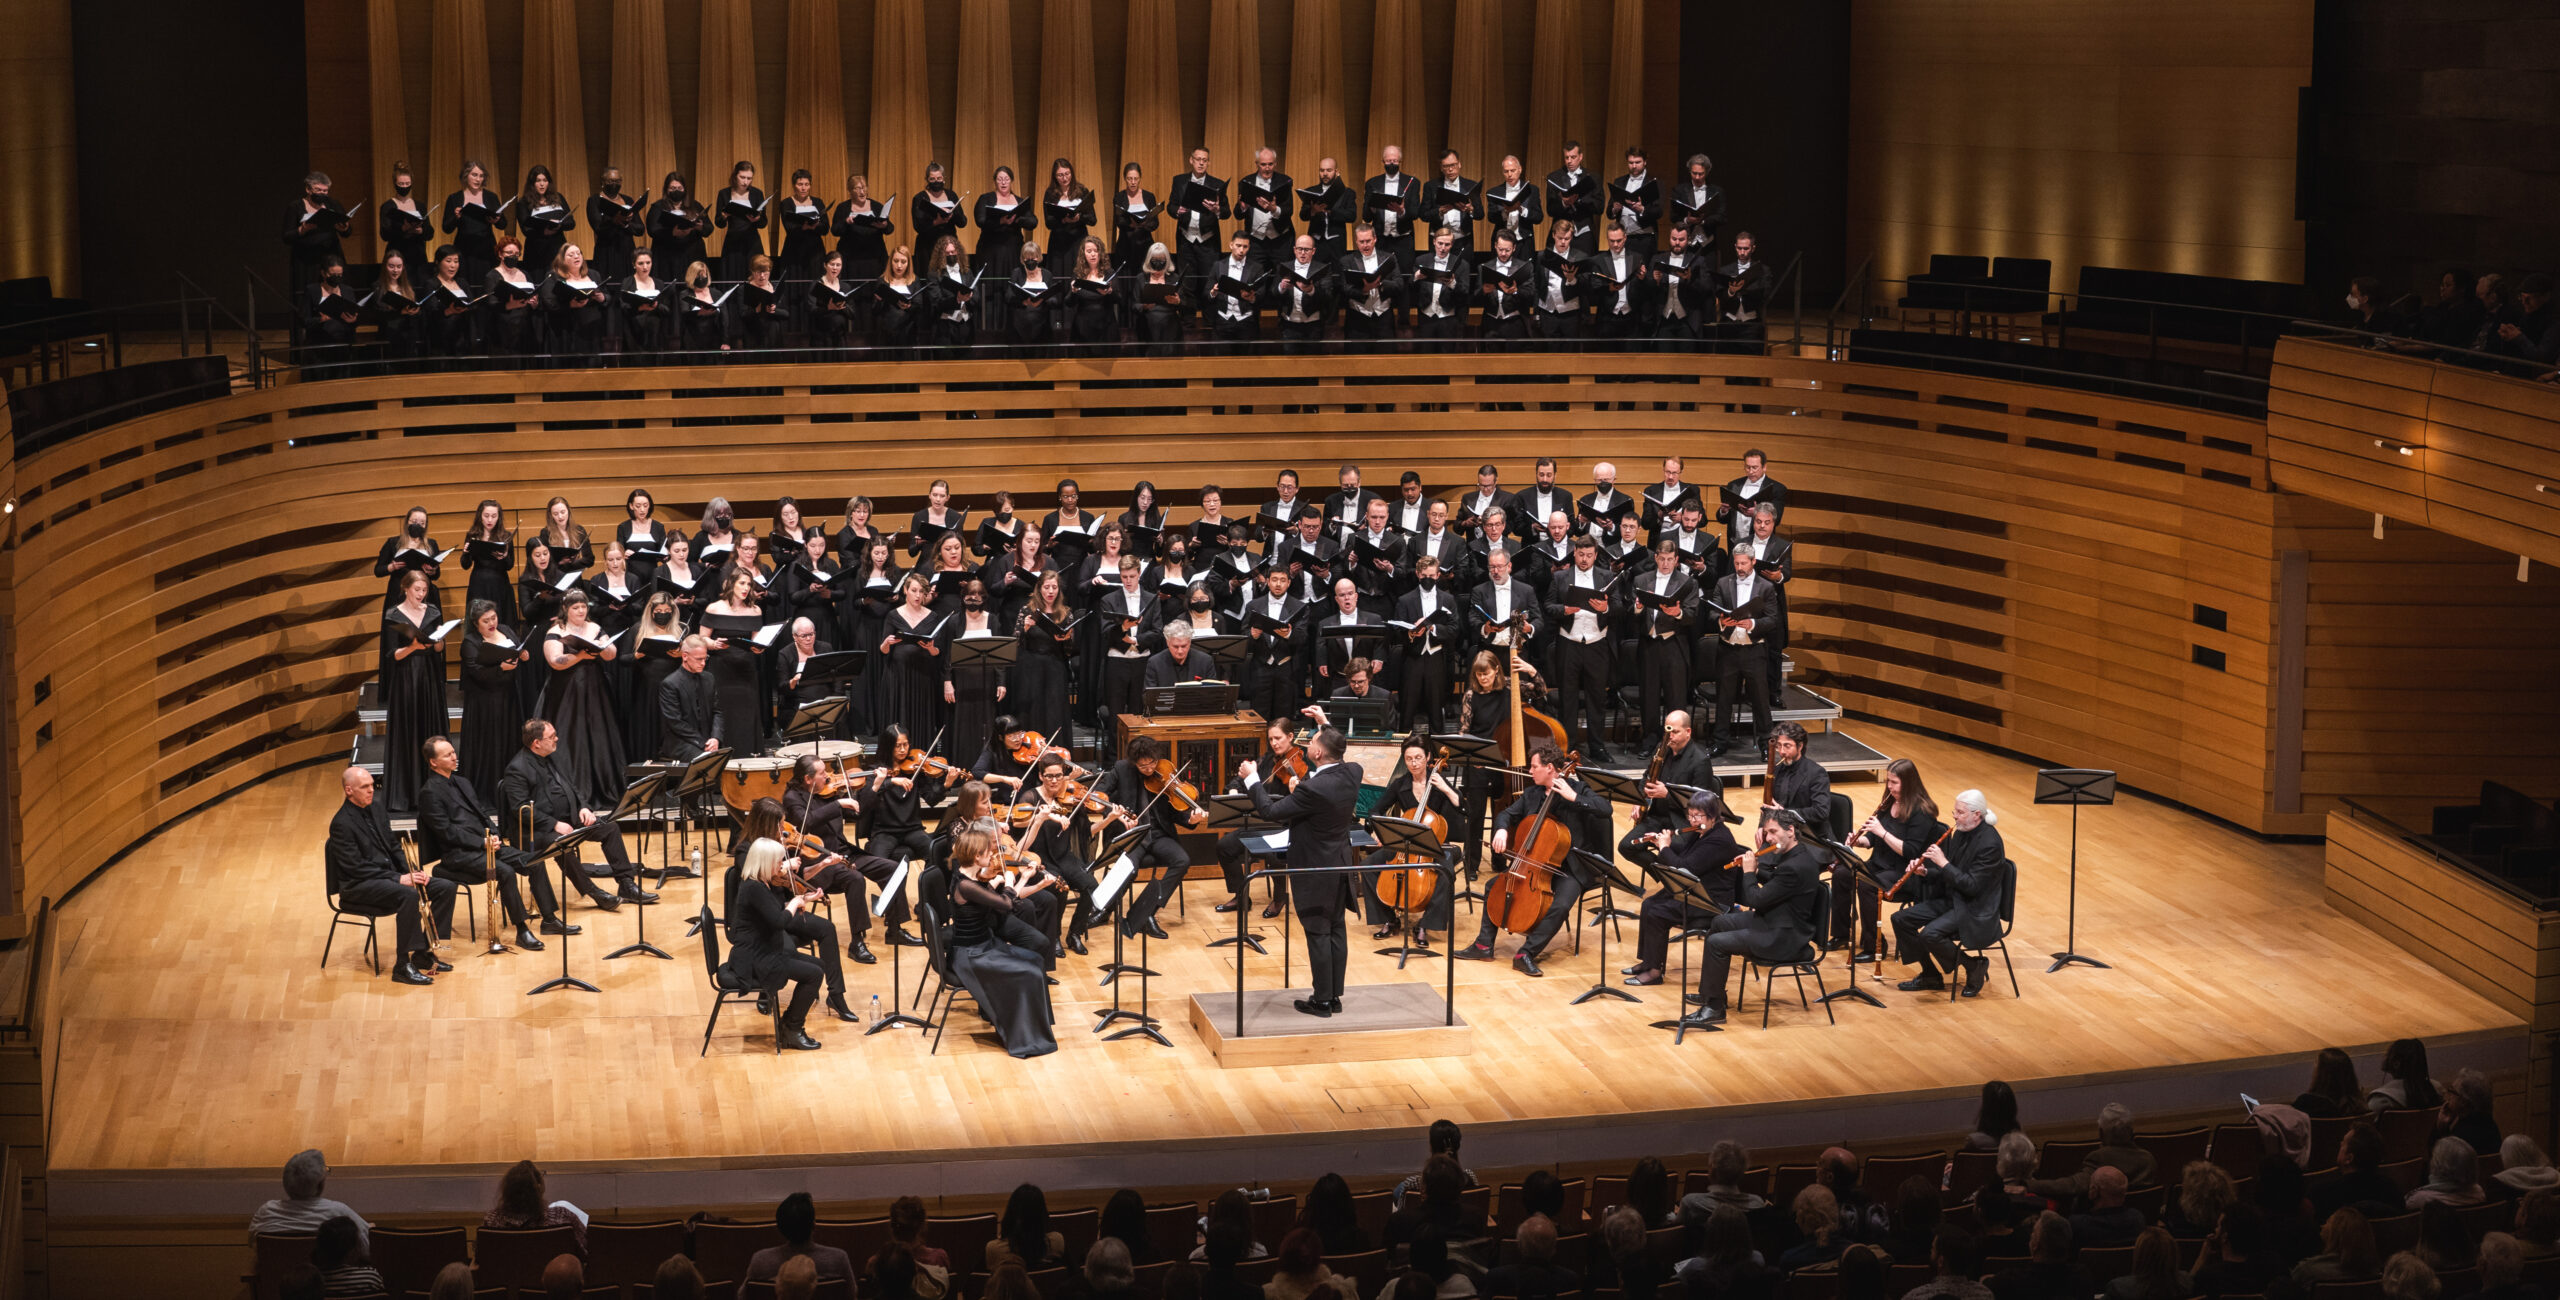 Review | Toronto Mendelssohn Choir's B Minor Mass a Fine